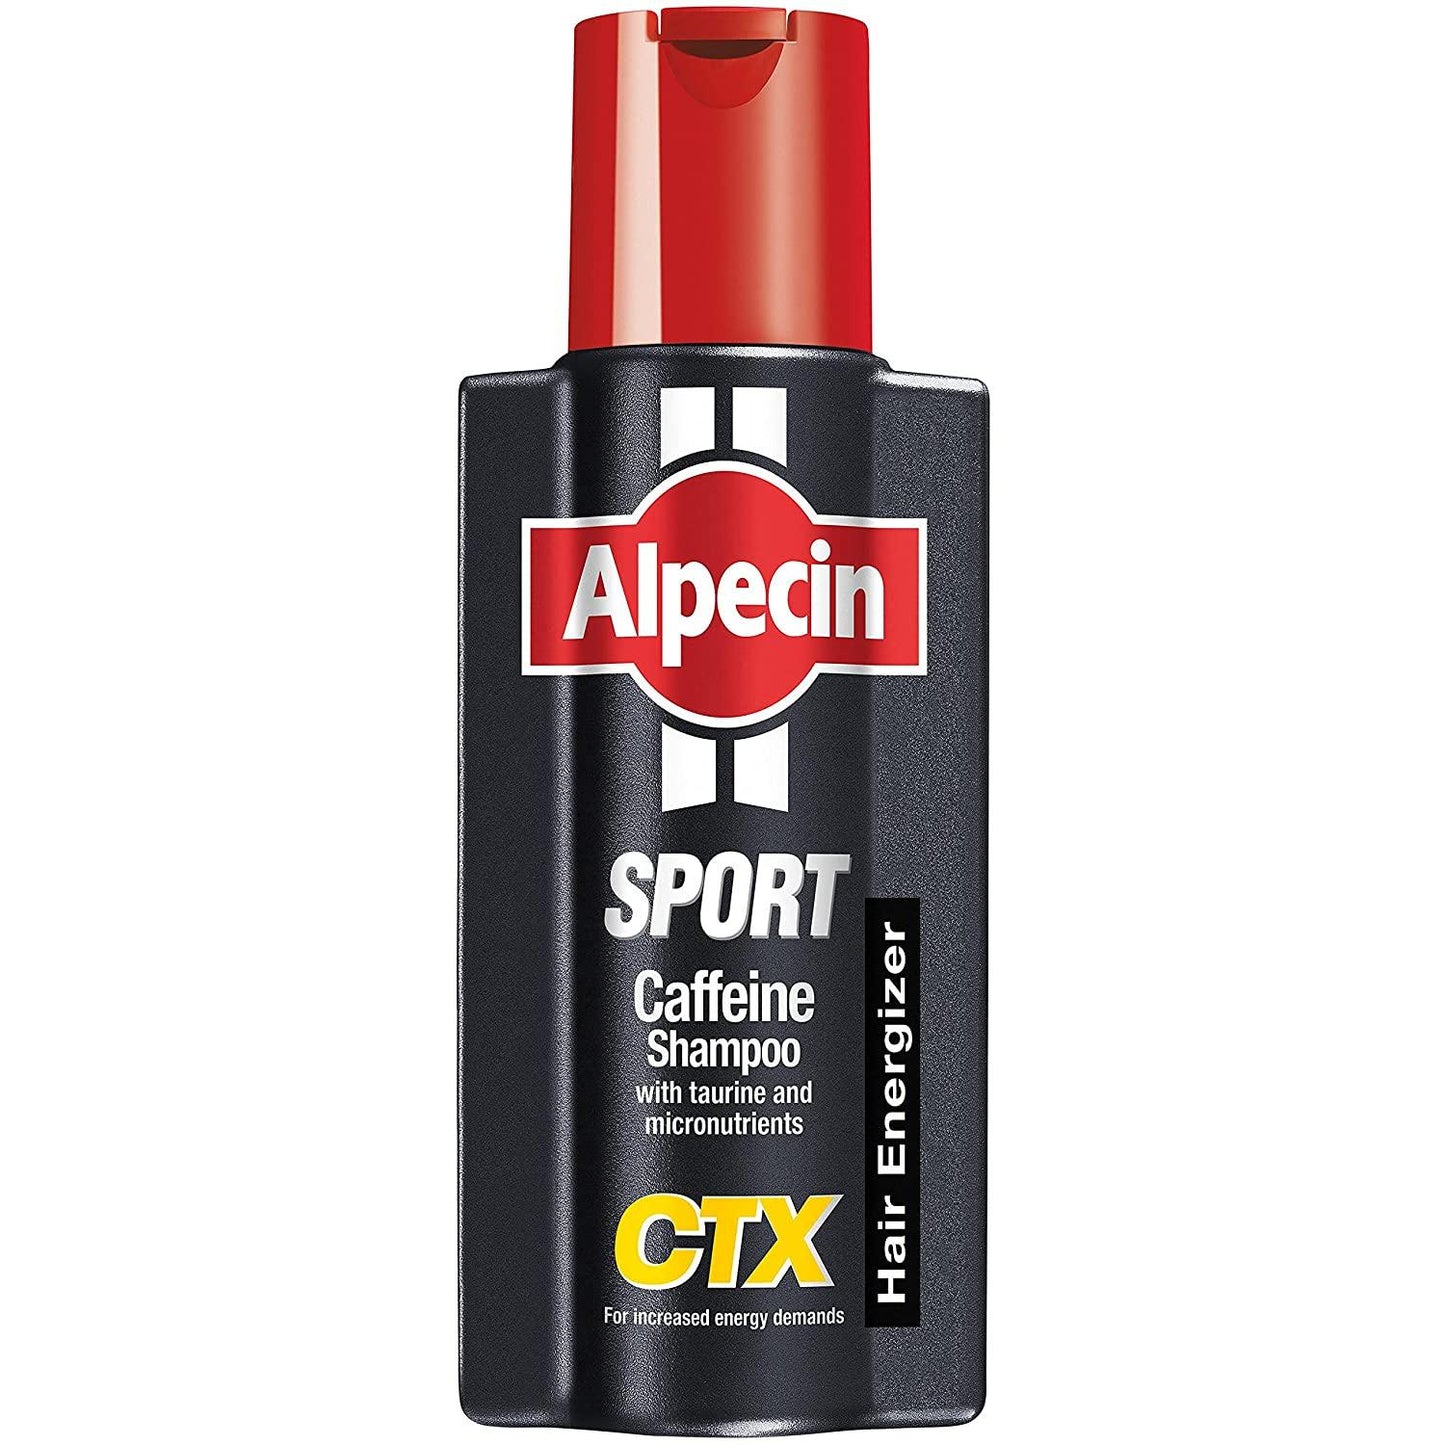 Alpecin CTX Sport Shampoo - welzo